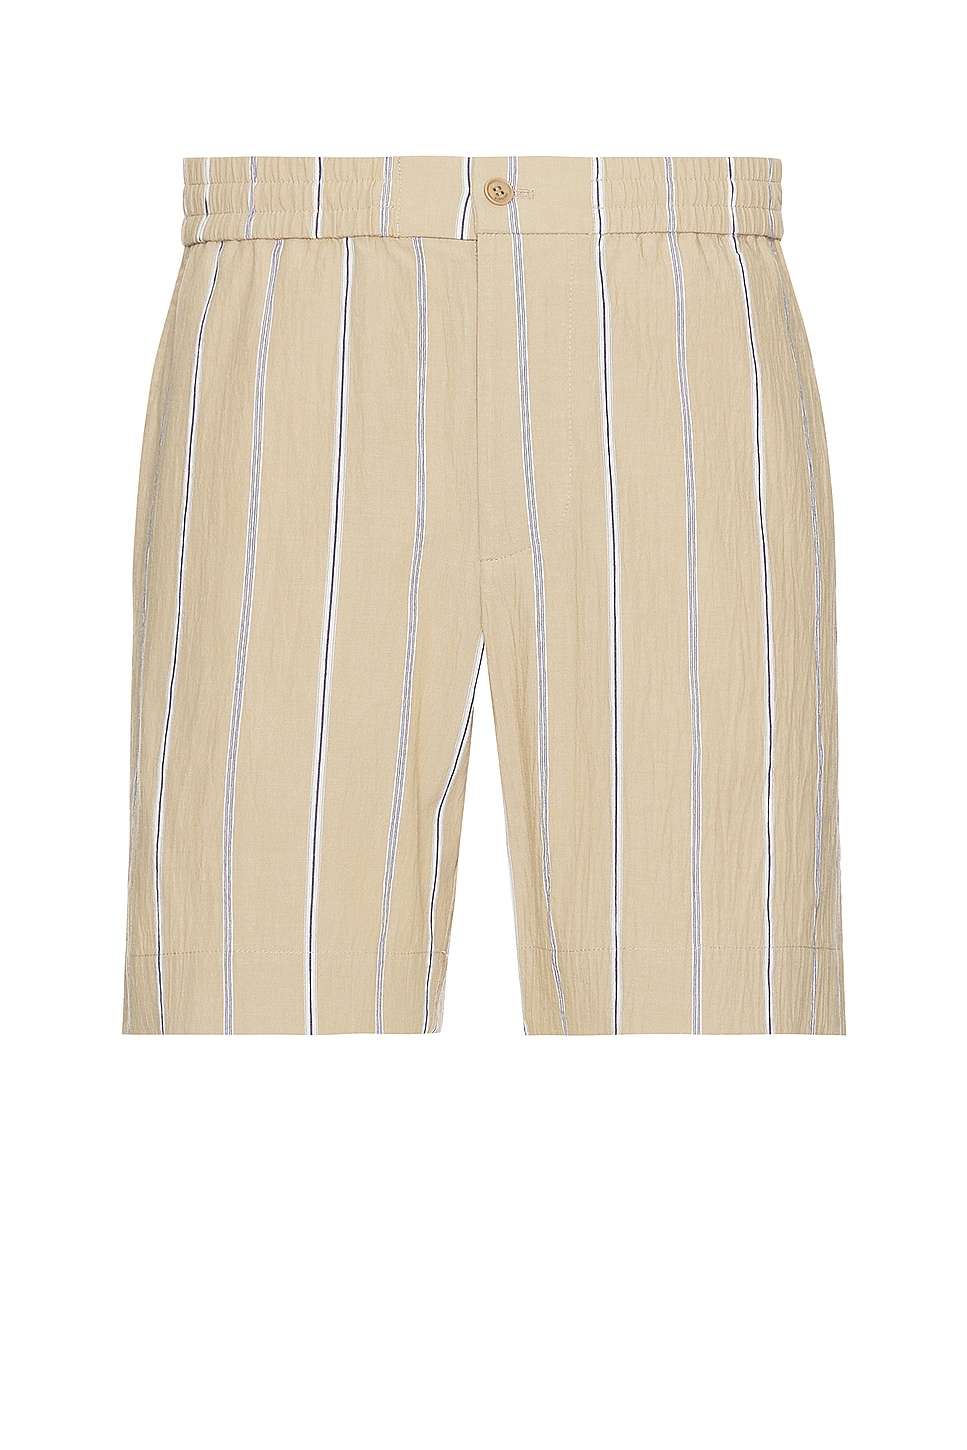 Image 1 of SIMKHAI Sebastian Yarn Dye Stripe Shorts in Khaki